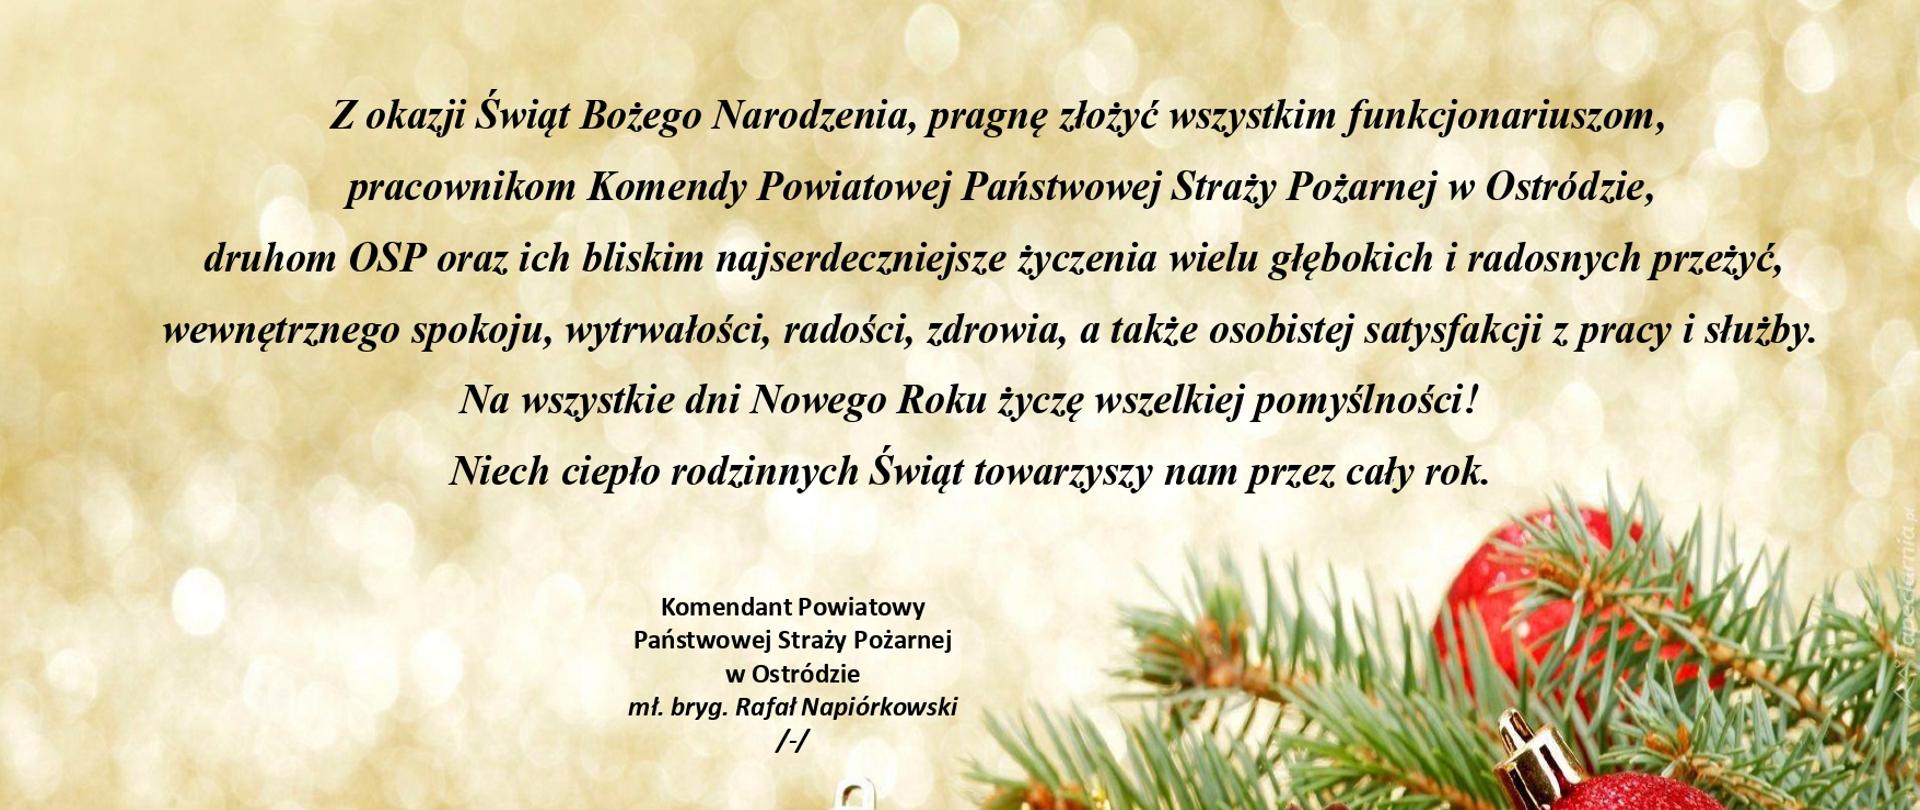 Życzenia świąteczne Komendanta Powiatowego PSP w Ostródzie